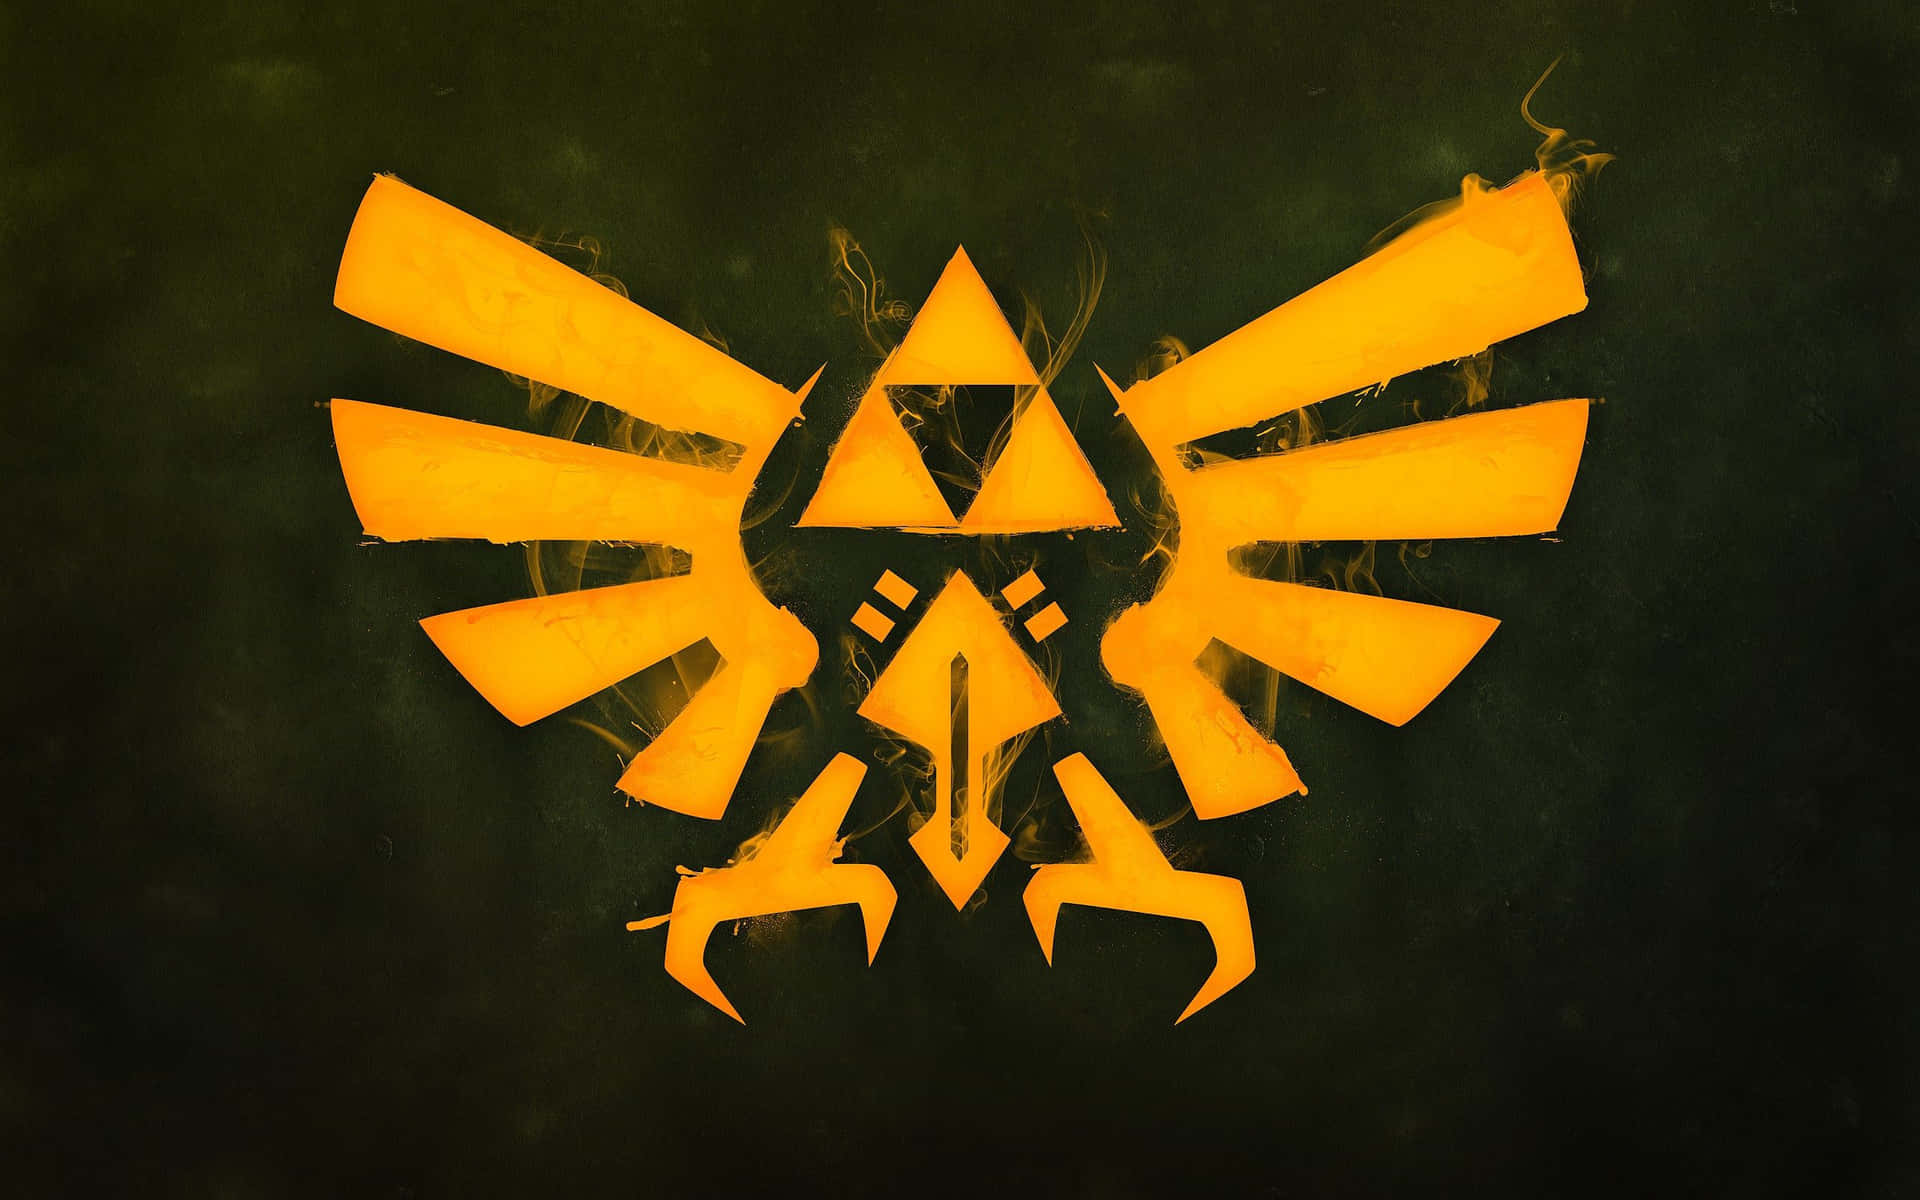 Triforce Emblem From The Legend Of Zelda